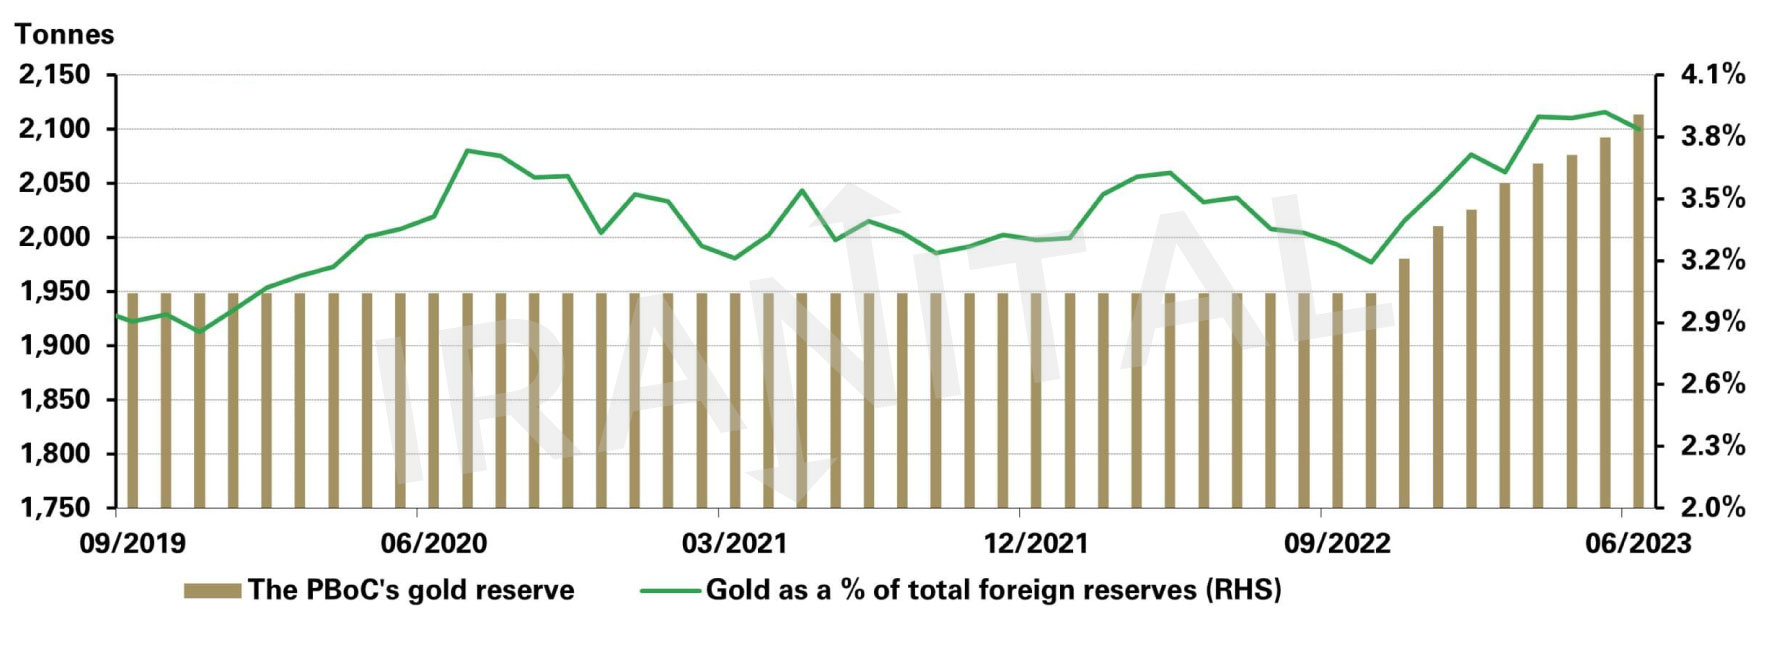 چین، ذخایر طلای بانک مرکزی: